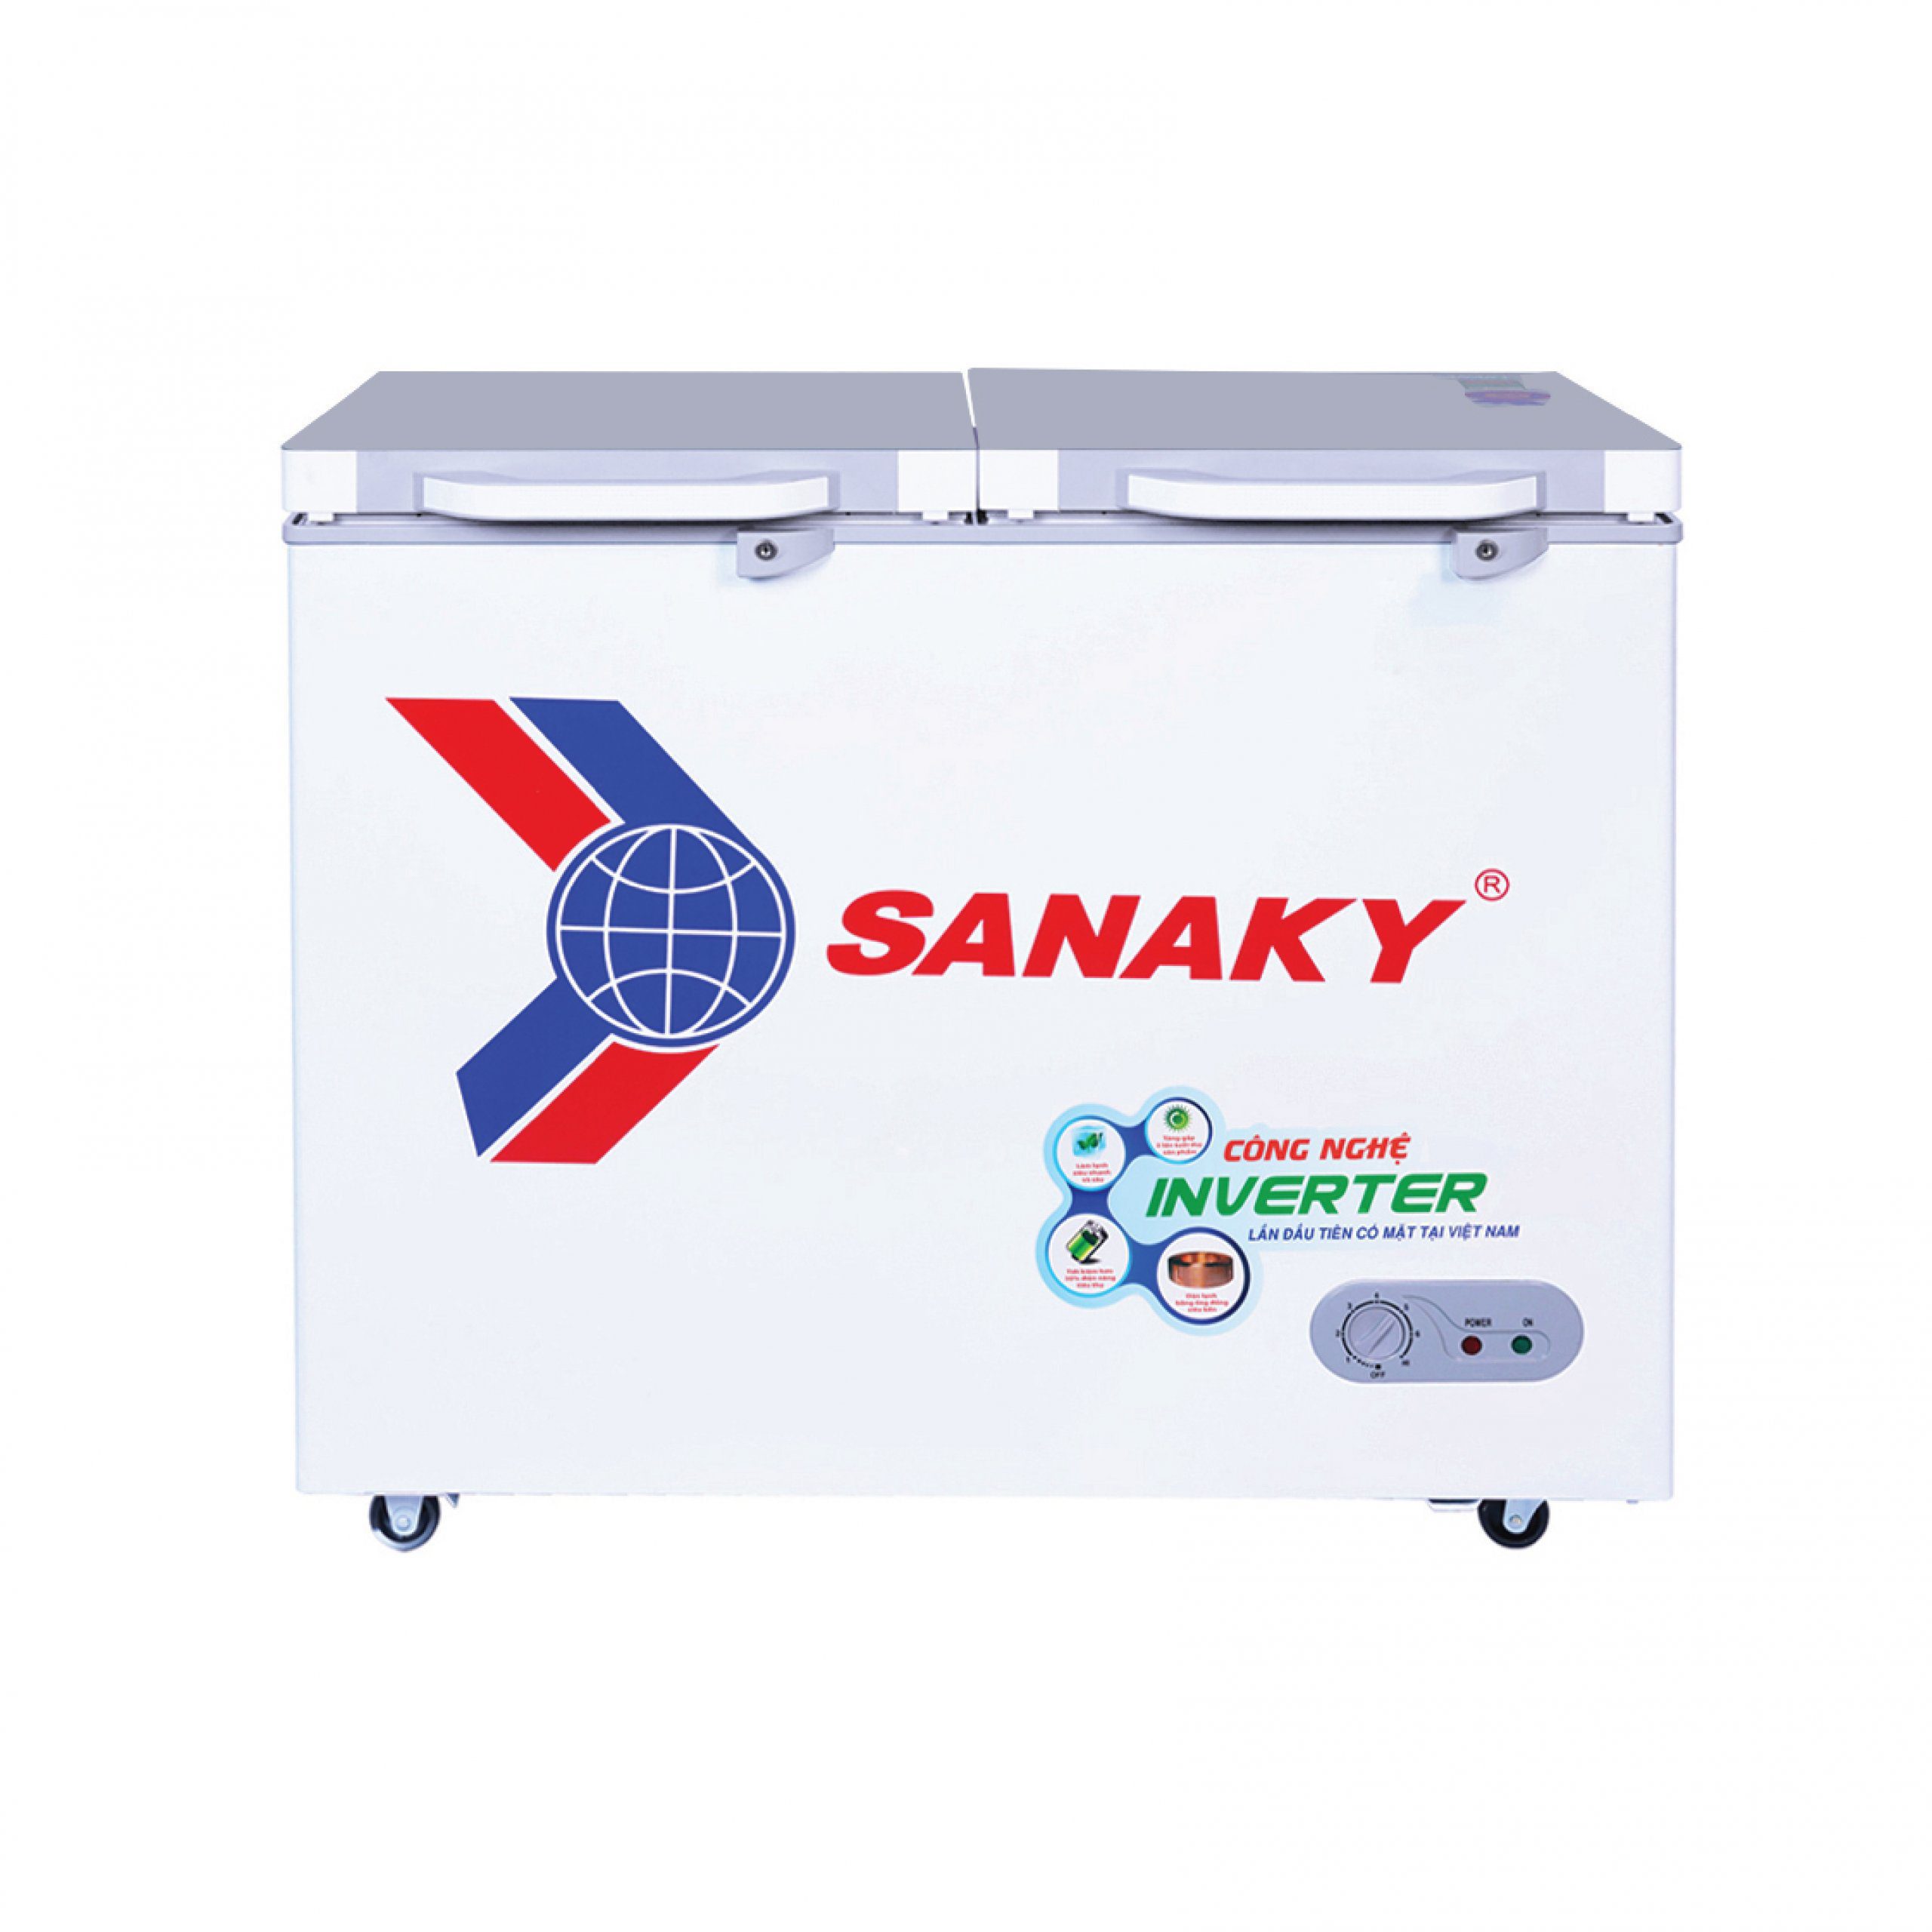 Tủ đông Sanaky VH-2599A4K | 208L 1 ngăn 2 cánh inverter